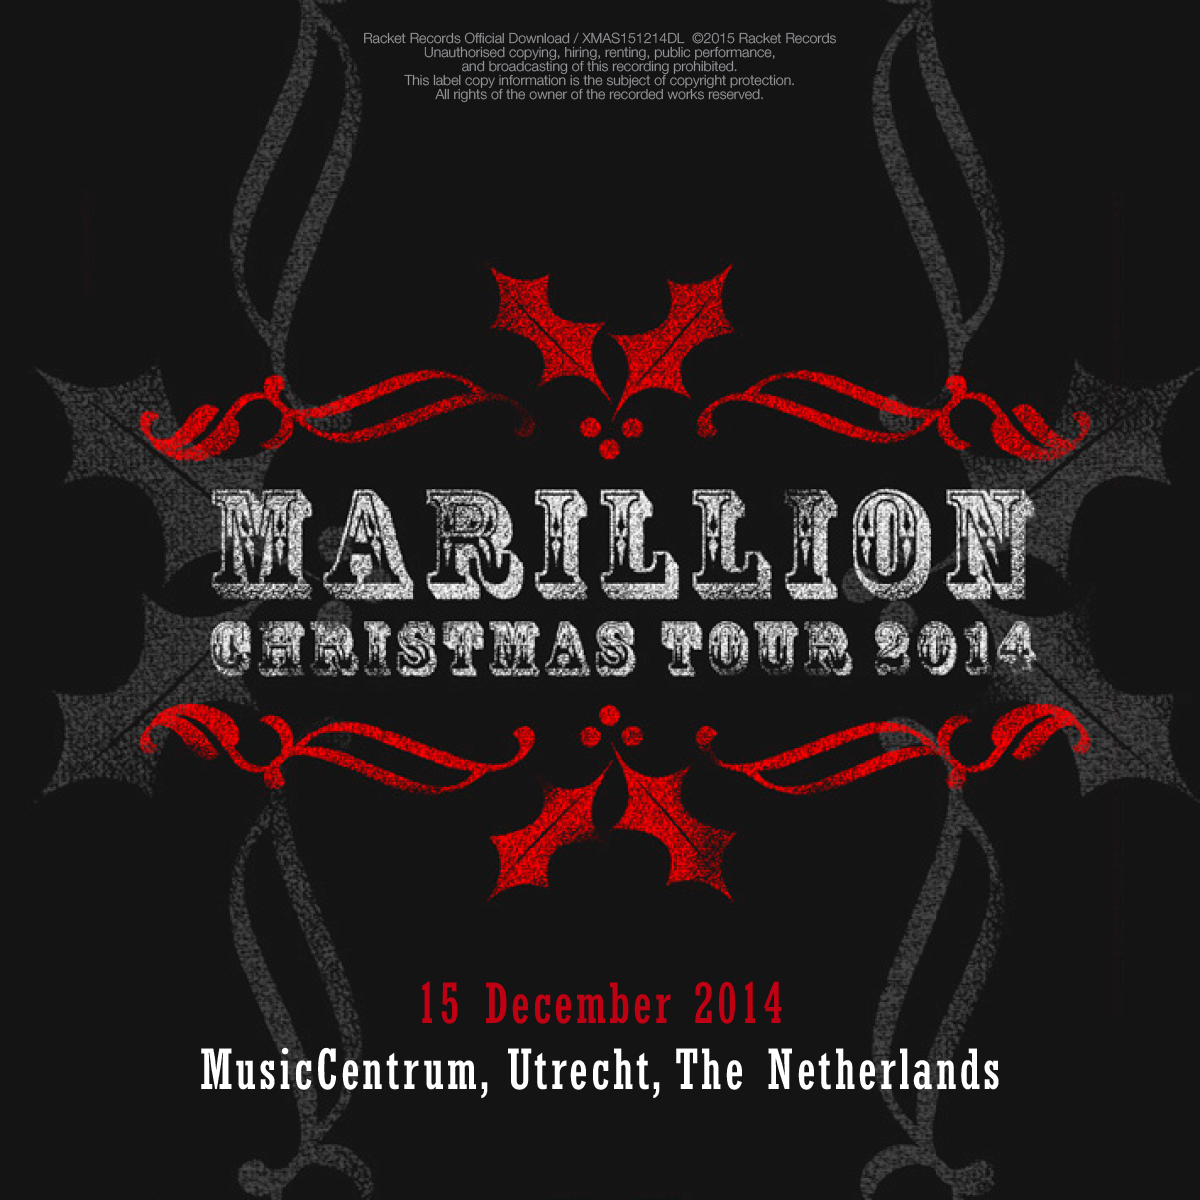 Tivoli Vredenburg, Utrecht, NL<br>15th December 2014 Live Download 320kbps